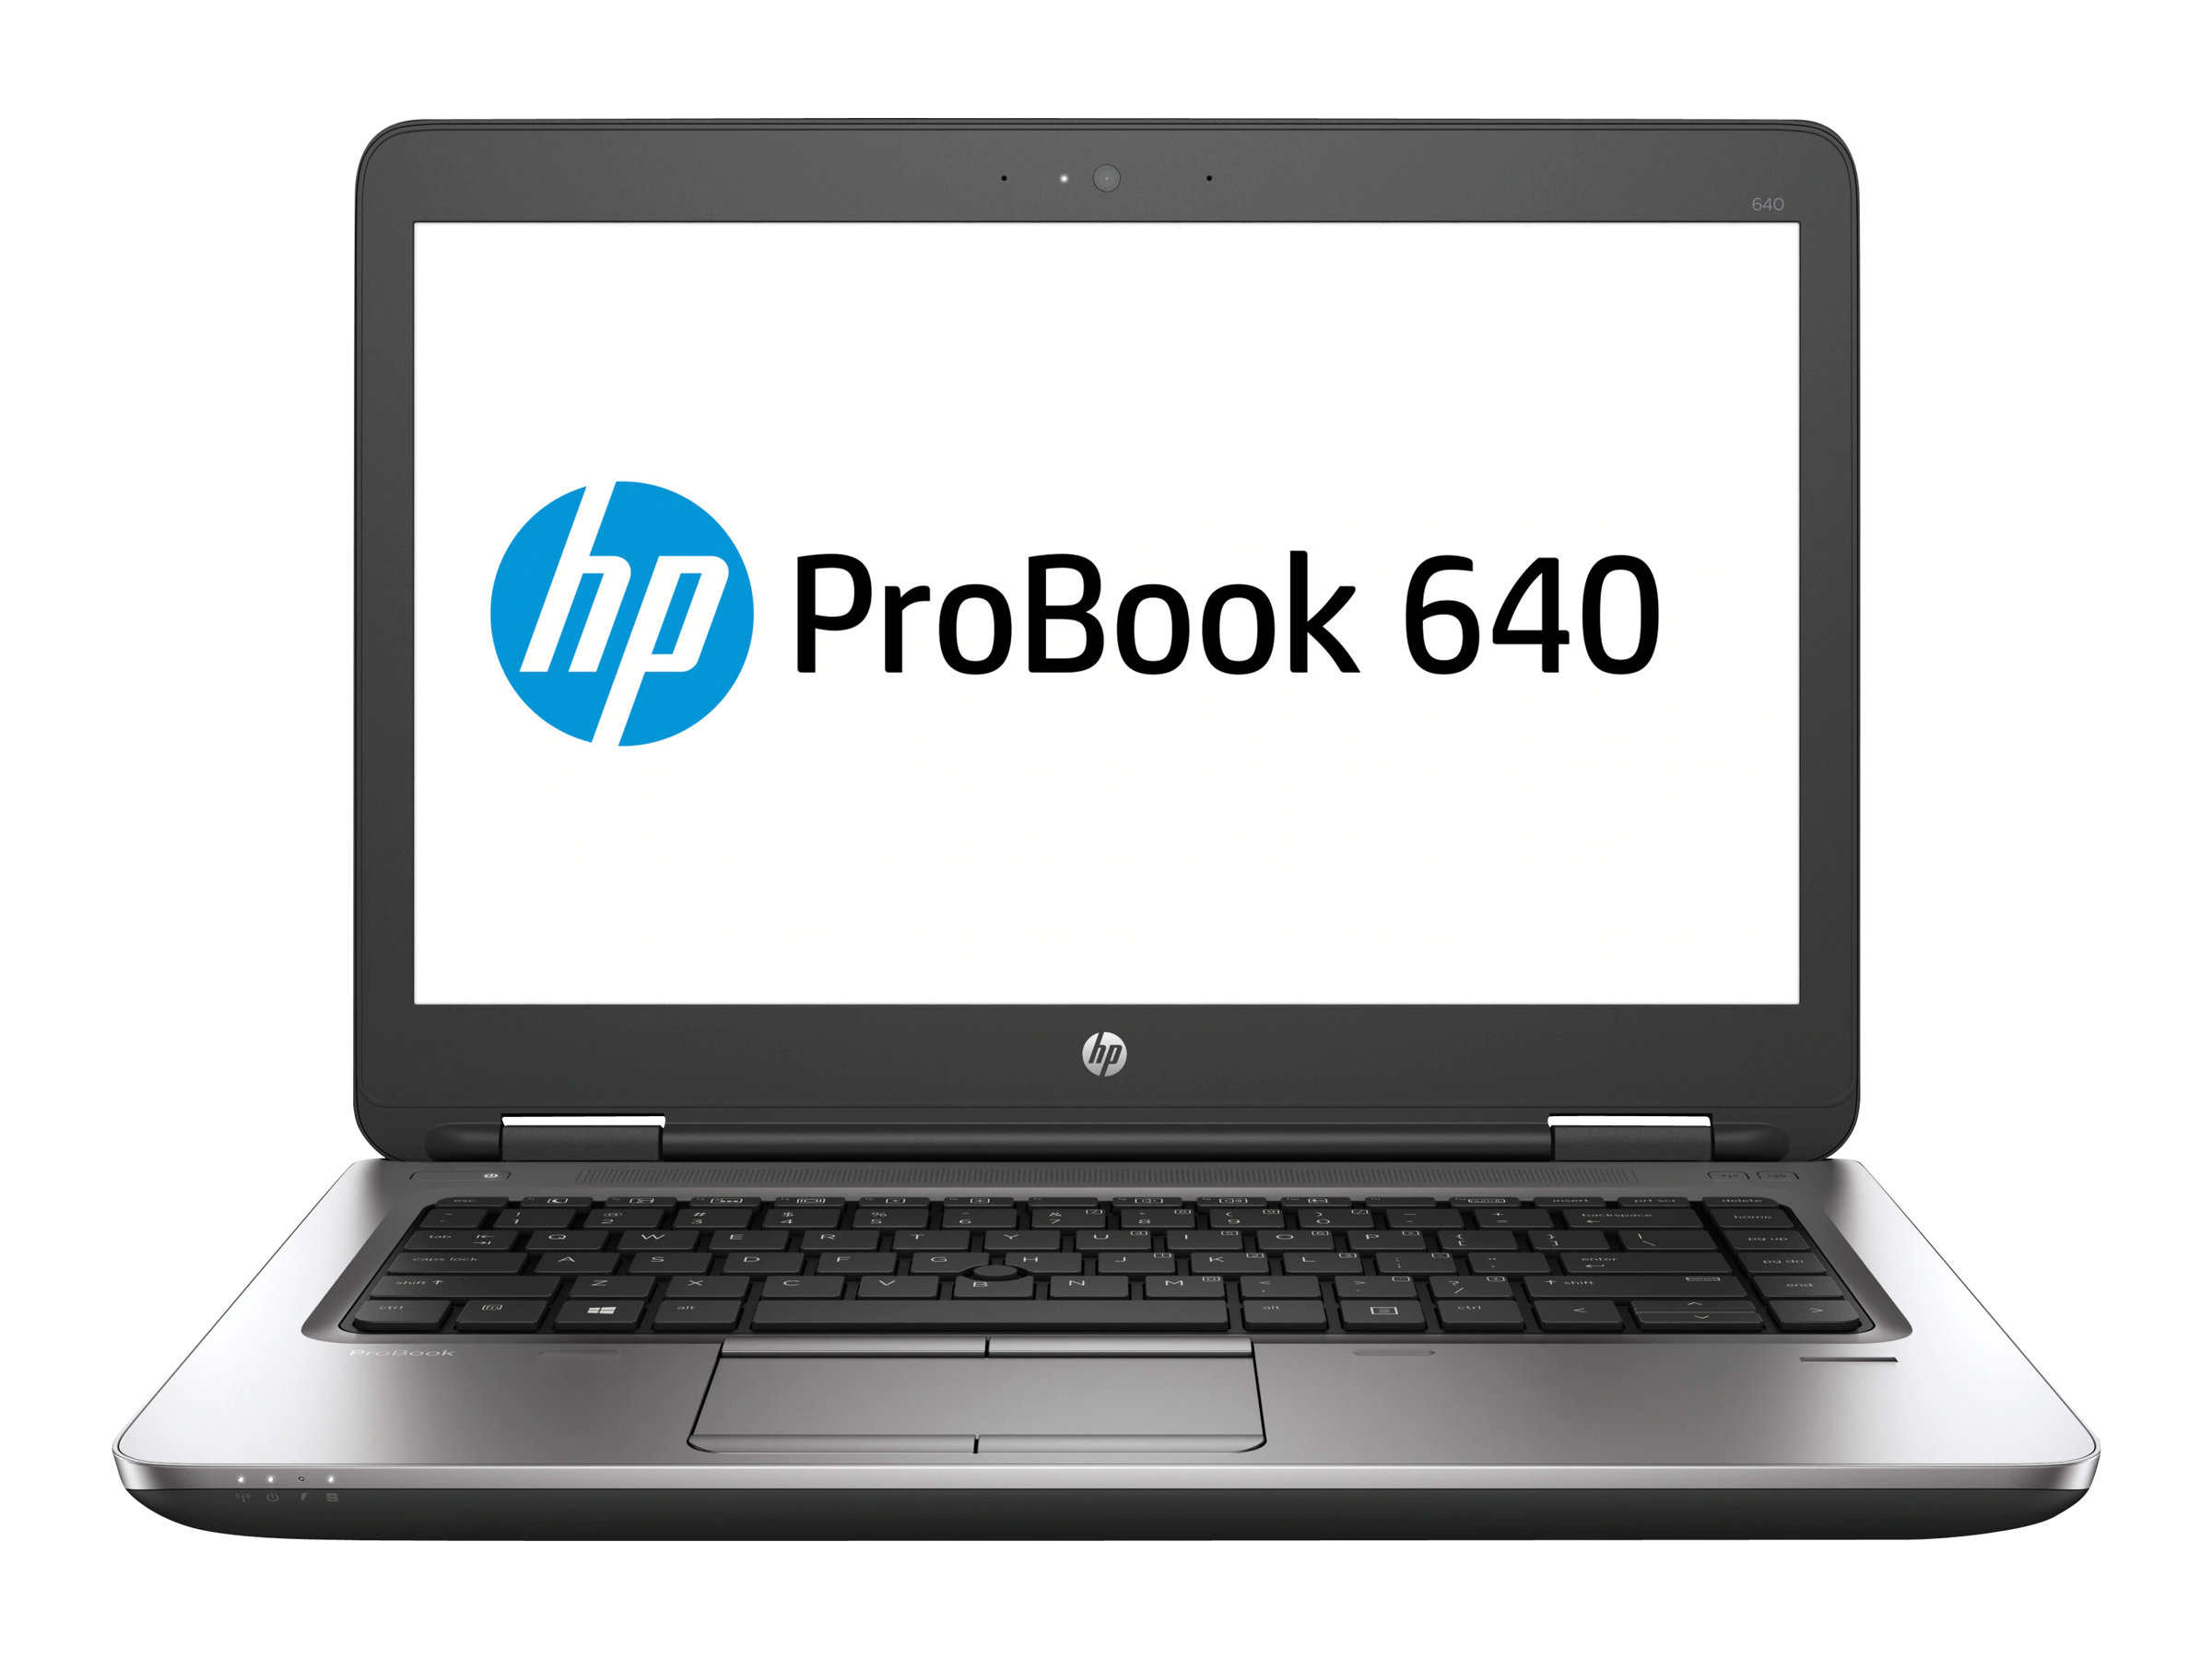 HP ProBook 640 G2 Notebook